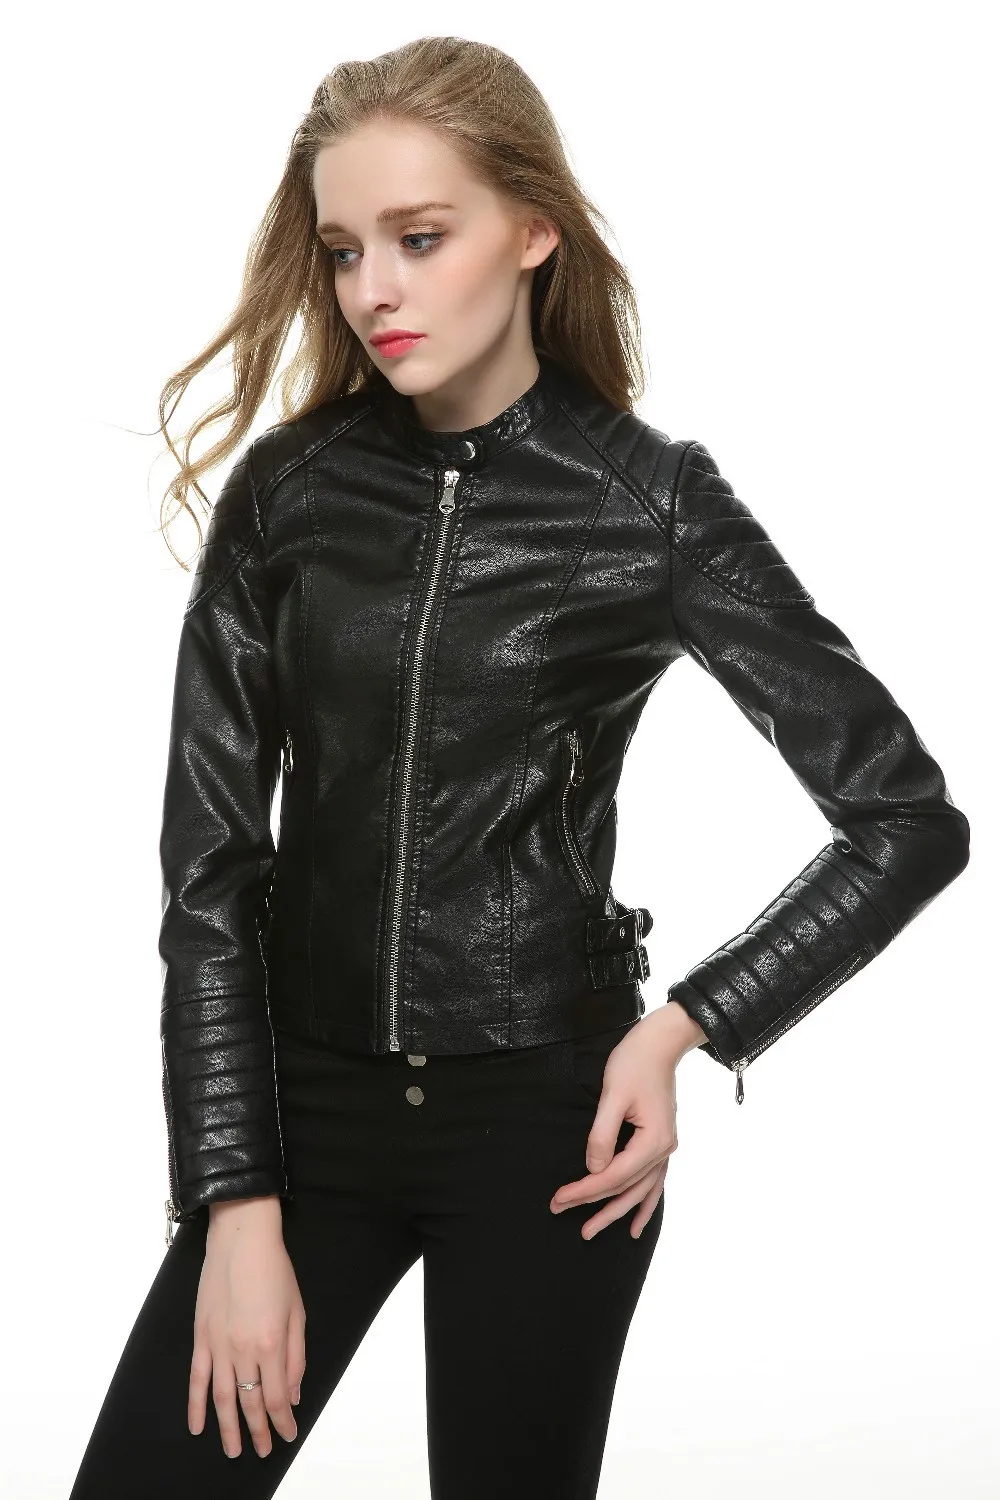 Коричневая Черная куртка из искусственной кожи, женская короткая приталенная брендовая байкерская куртка, белое кожаное пальто, Chaquetas Mujer, 5 цветов